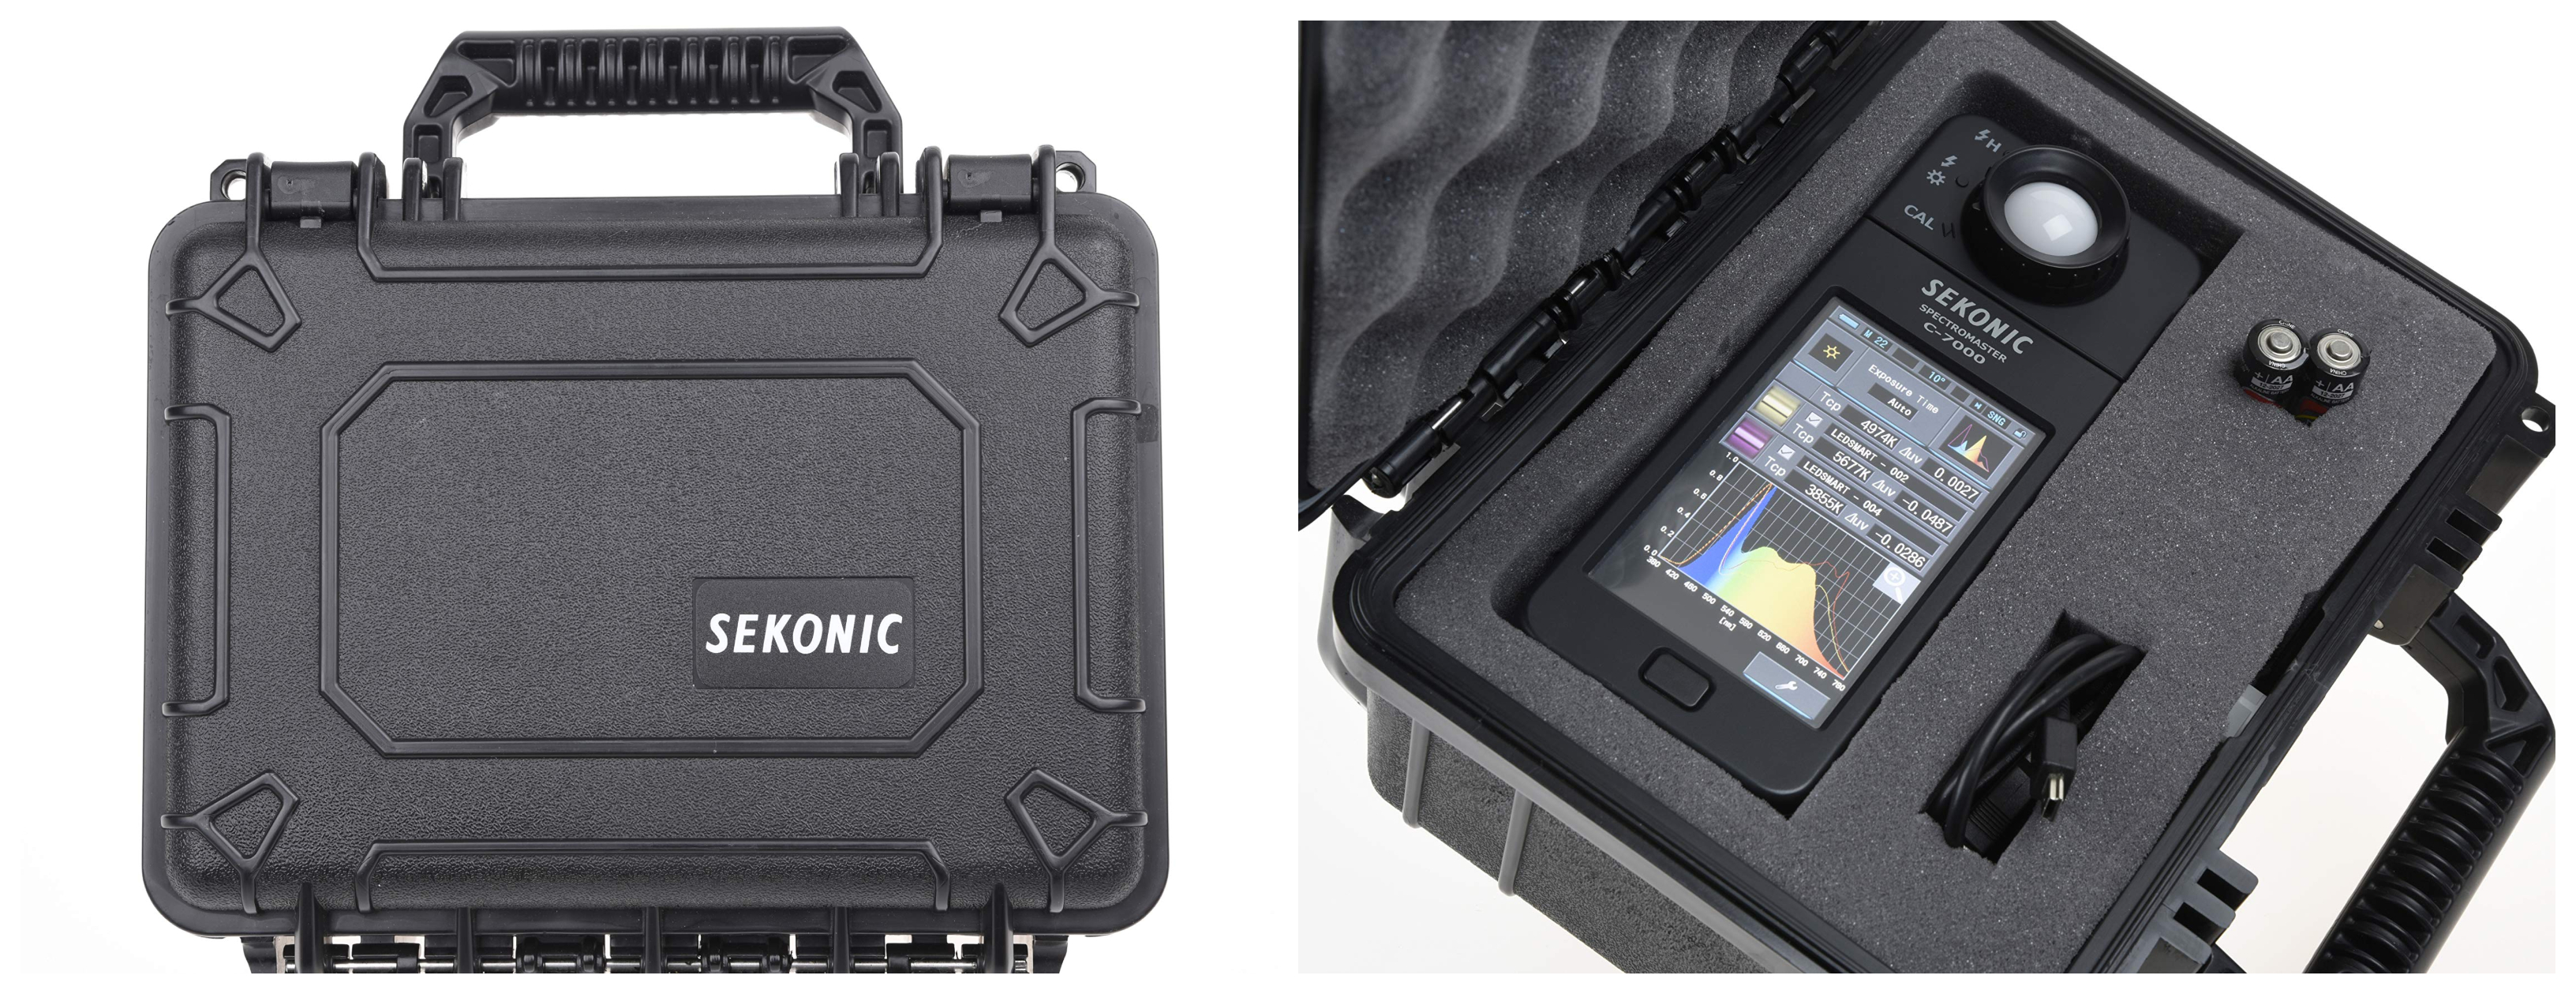 Expozimetr Sekonic C-7000 je dodáván v praktickém cestovním kufříku, který zajistí vyšší bezpečnost při převozu zařízení z místa na místo.